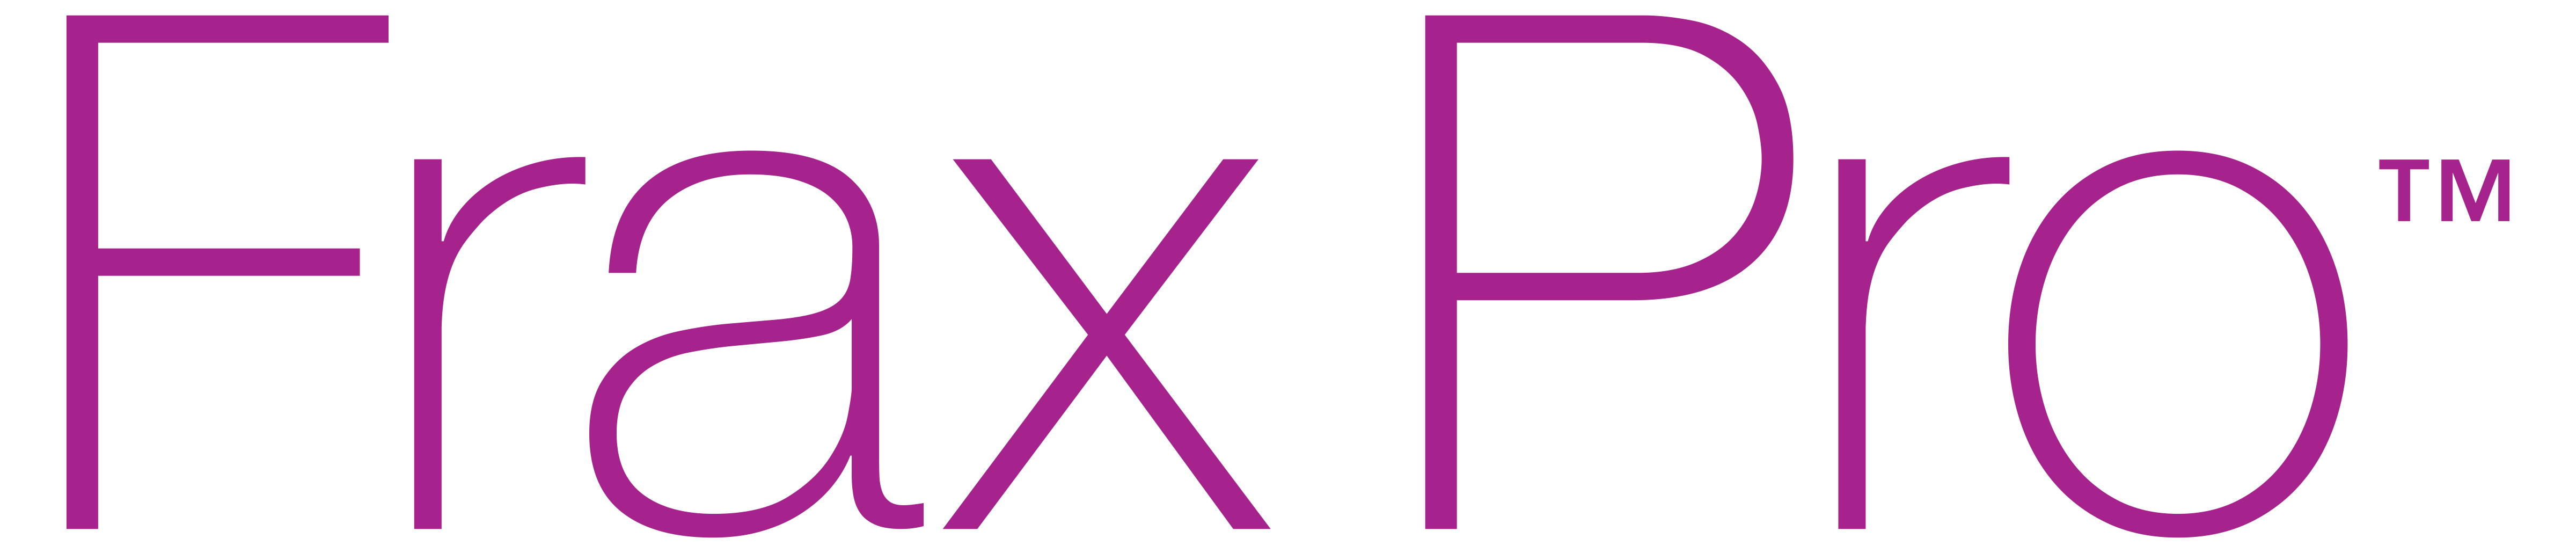 FraxPro-Logo.png